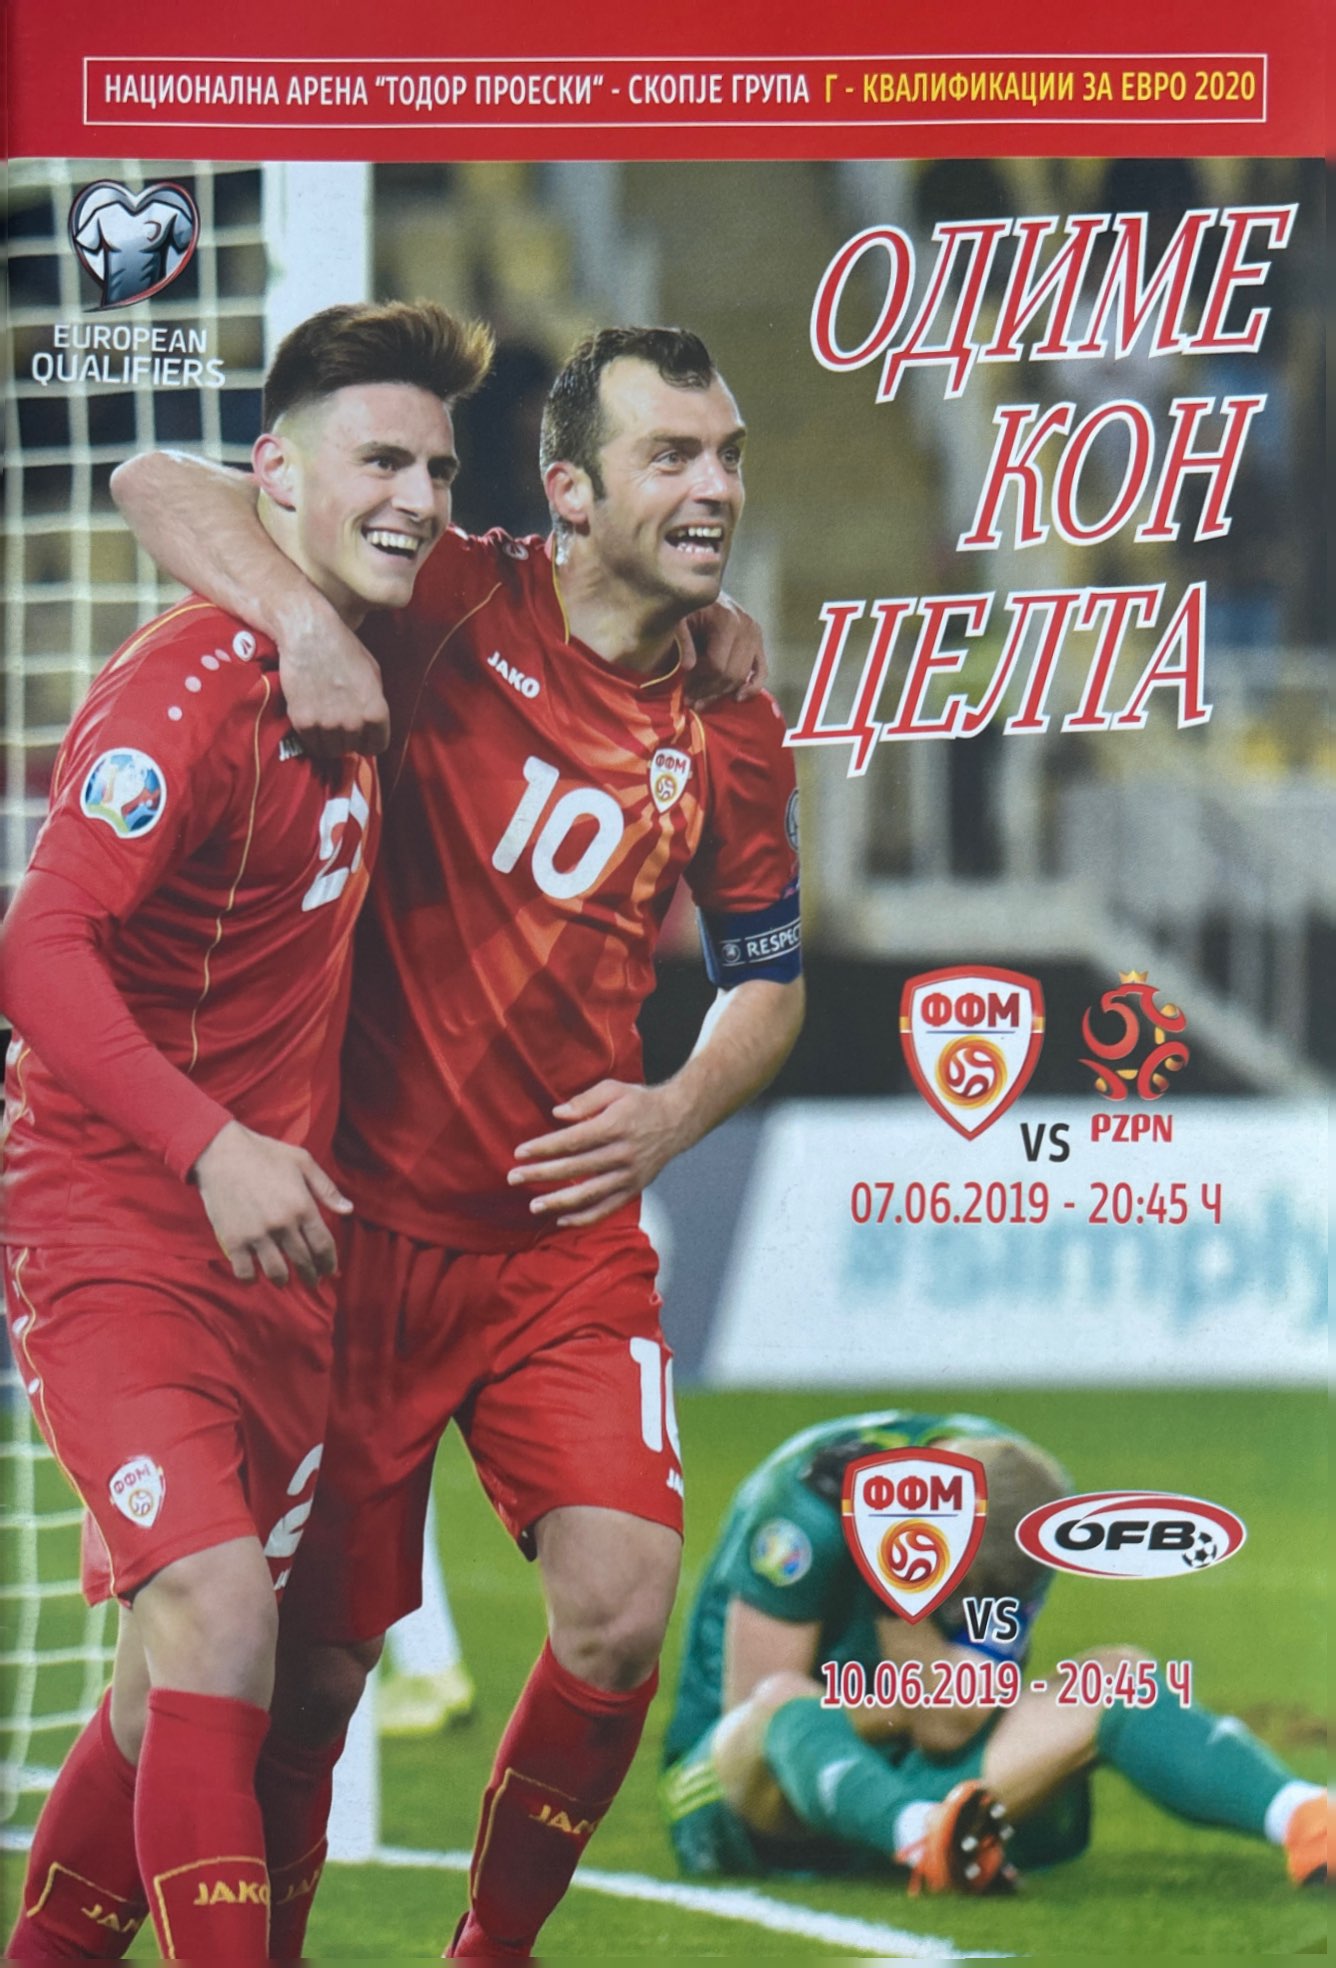 Program meczowy Macedonia Północna - Polska 0:1 (07.06.2019)